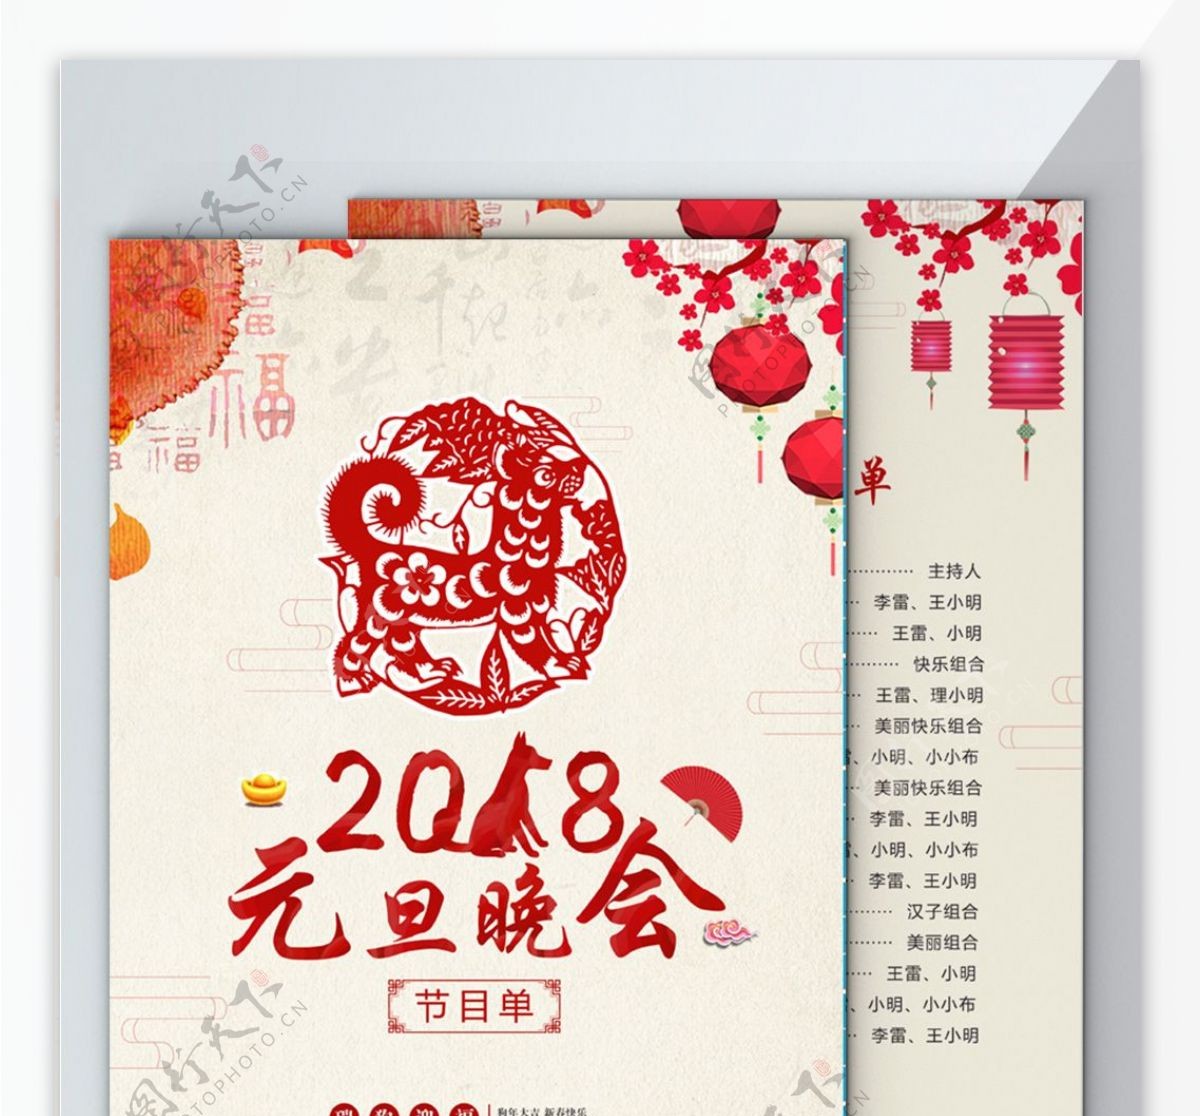 中国风剪纸2018年元旦晚会节目单